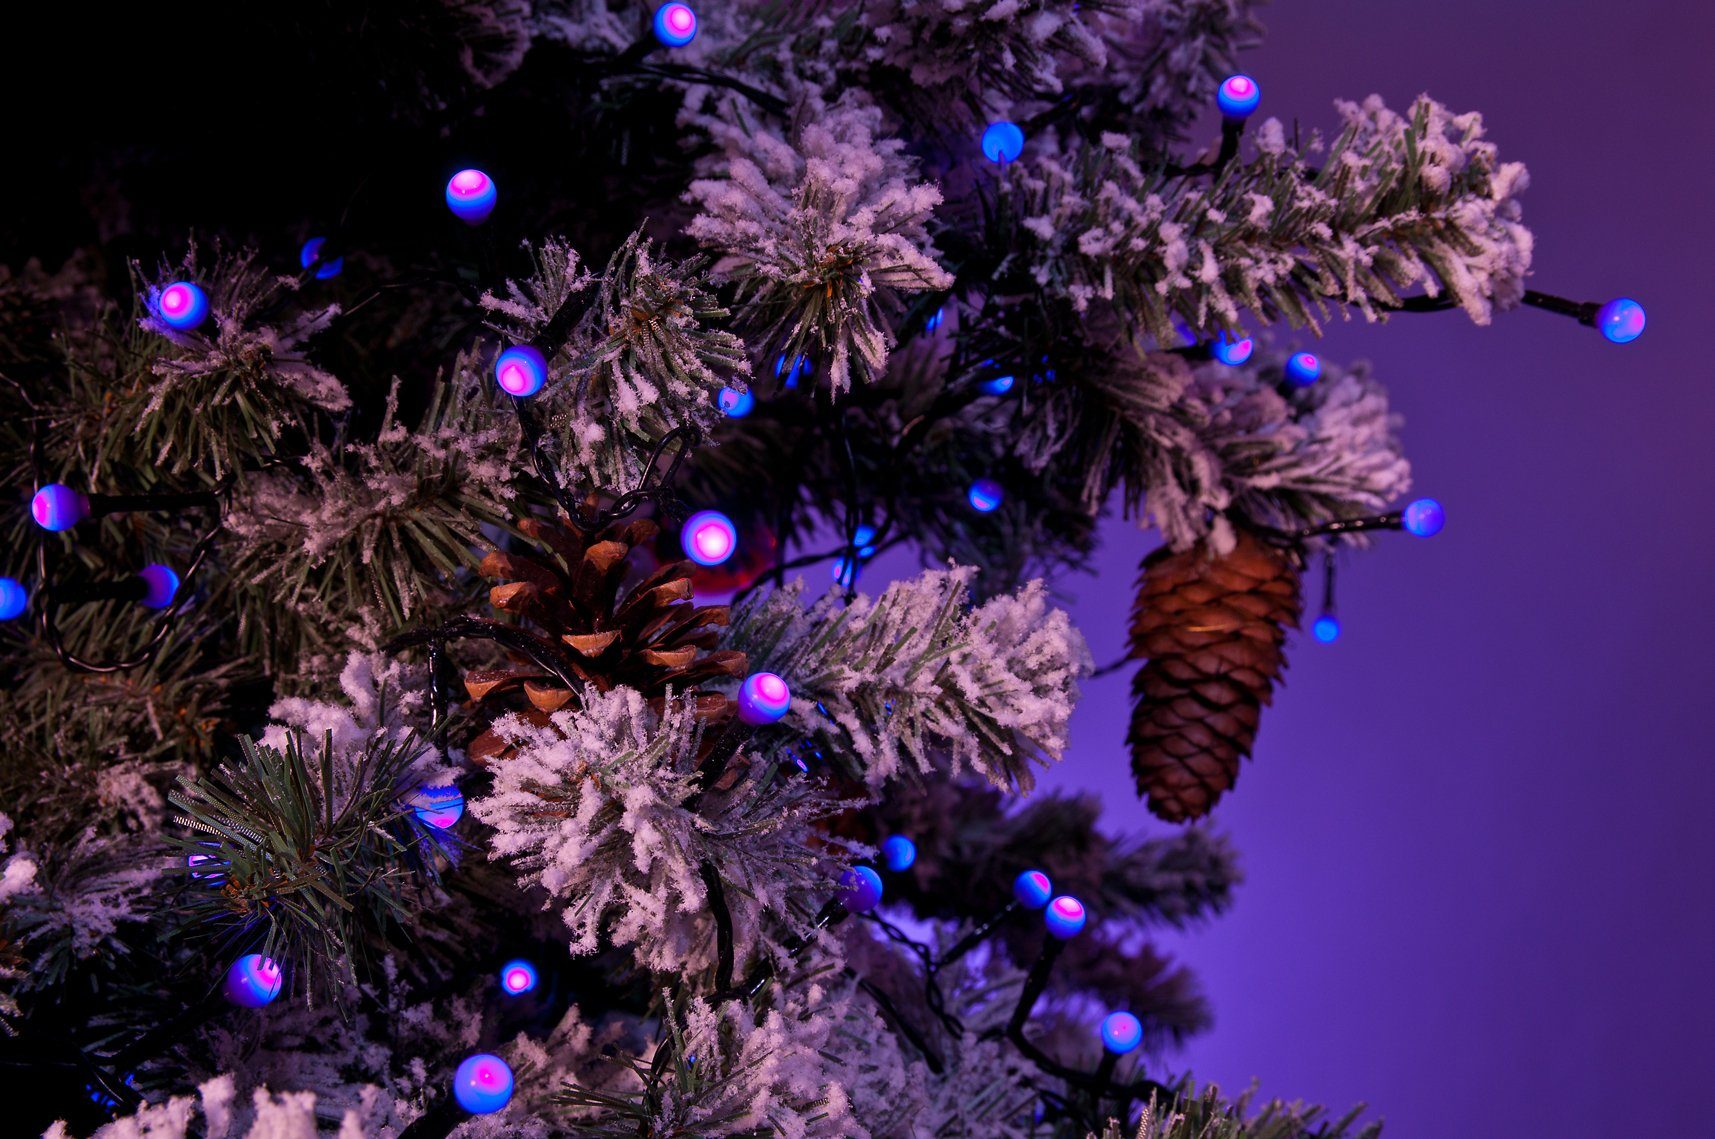 KONSTSMIDE LED-Lichterkette Weihnachtsdeko purpurfarbene Globelichterkette, 80-flammig, LED Dioden 80 Dioden, runde aussen